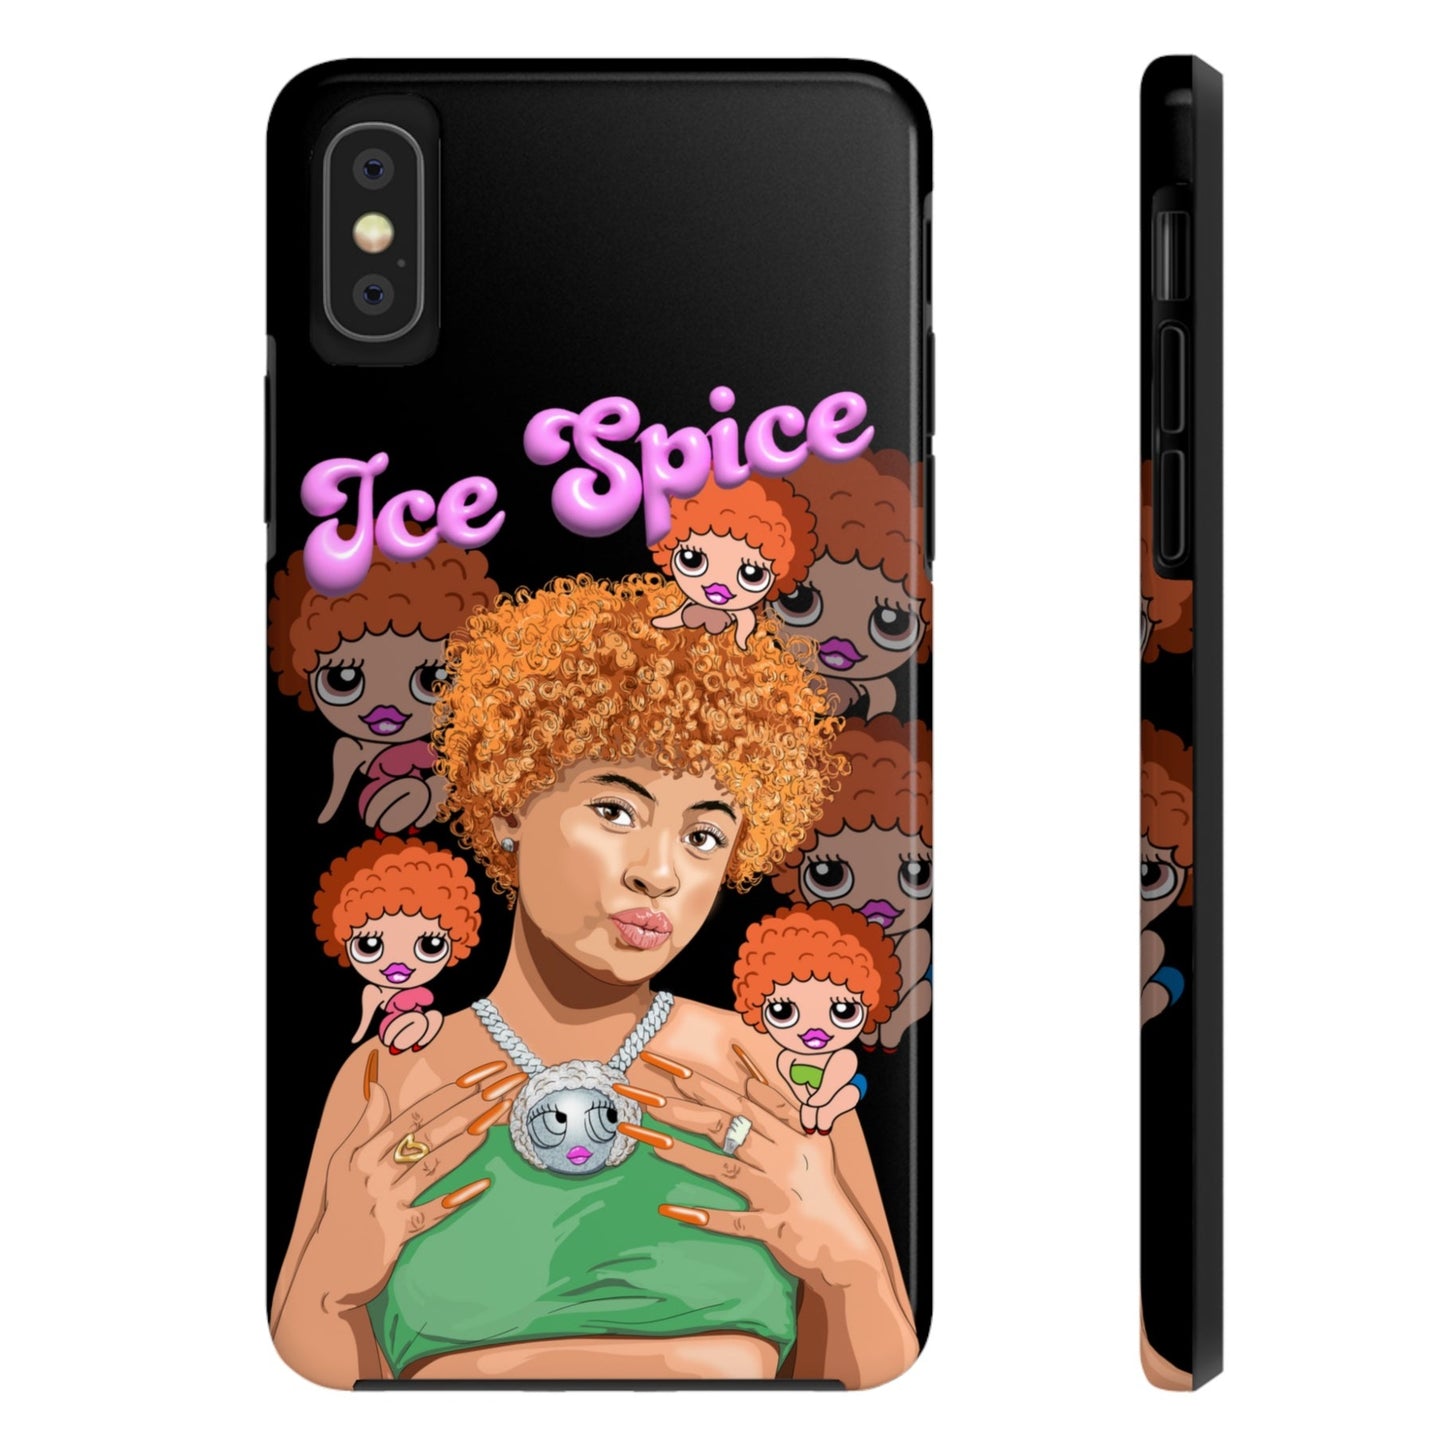 Ice Spice iPhone Case - Princess Diana